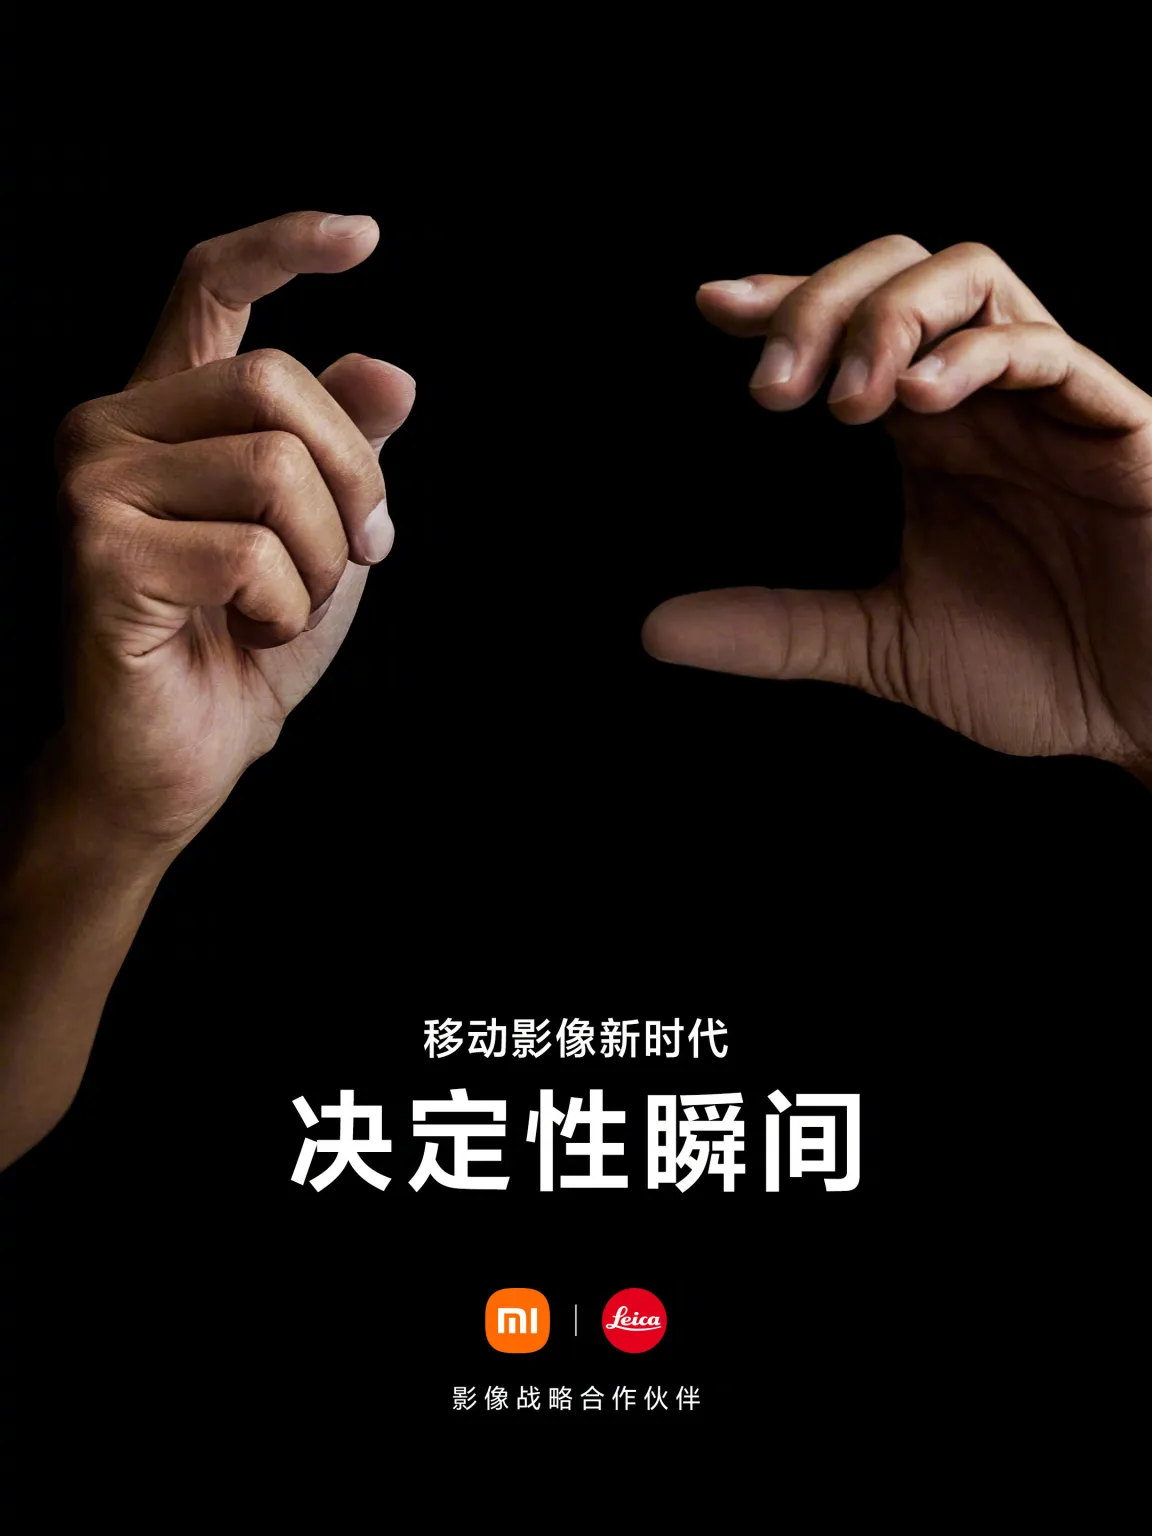 Офіційно: Xiaomi та Leica відкриють нову еру мобільної фотографії – фото 1